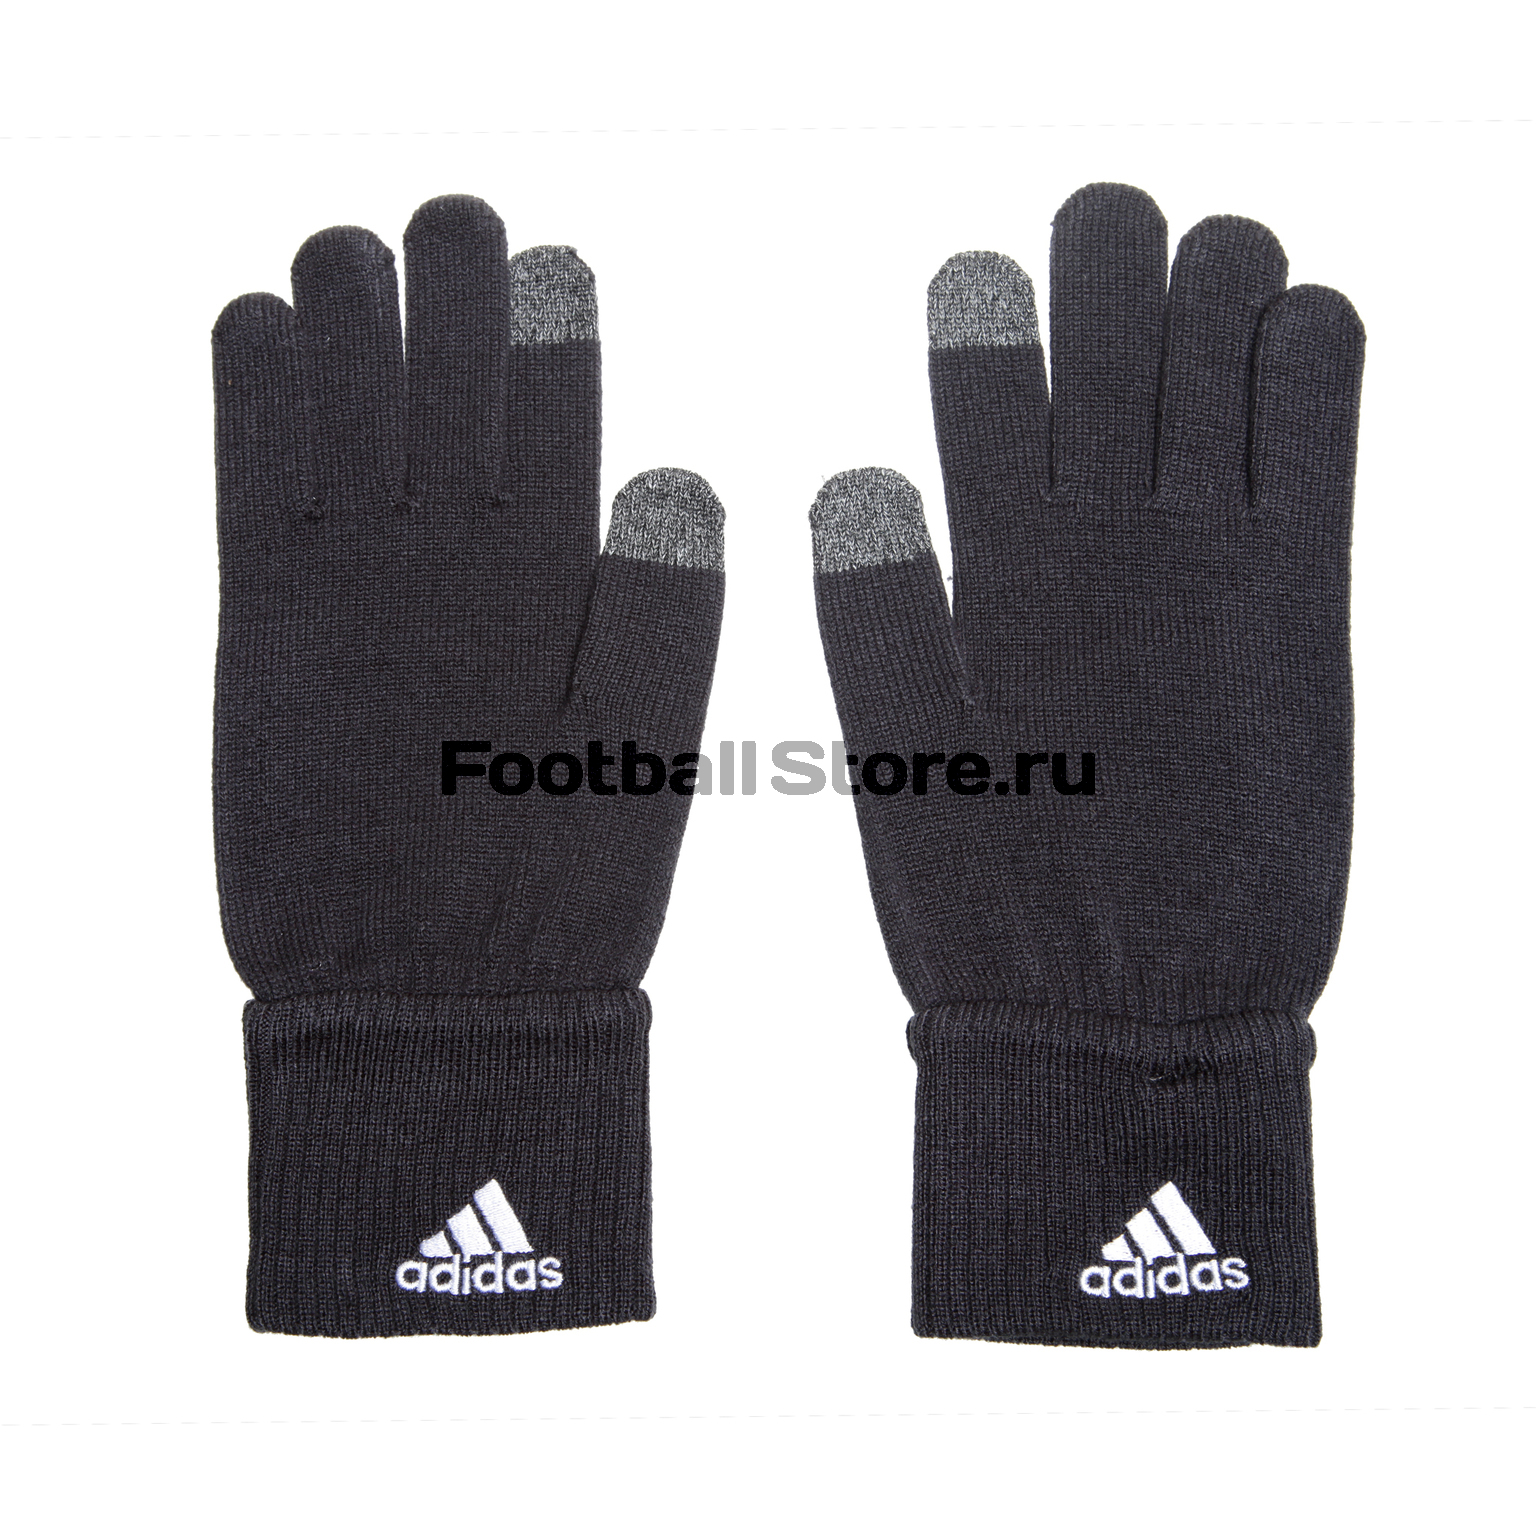 Перчатки тренировочные Adidas Manchester United BR7027